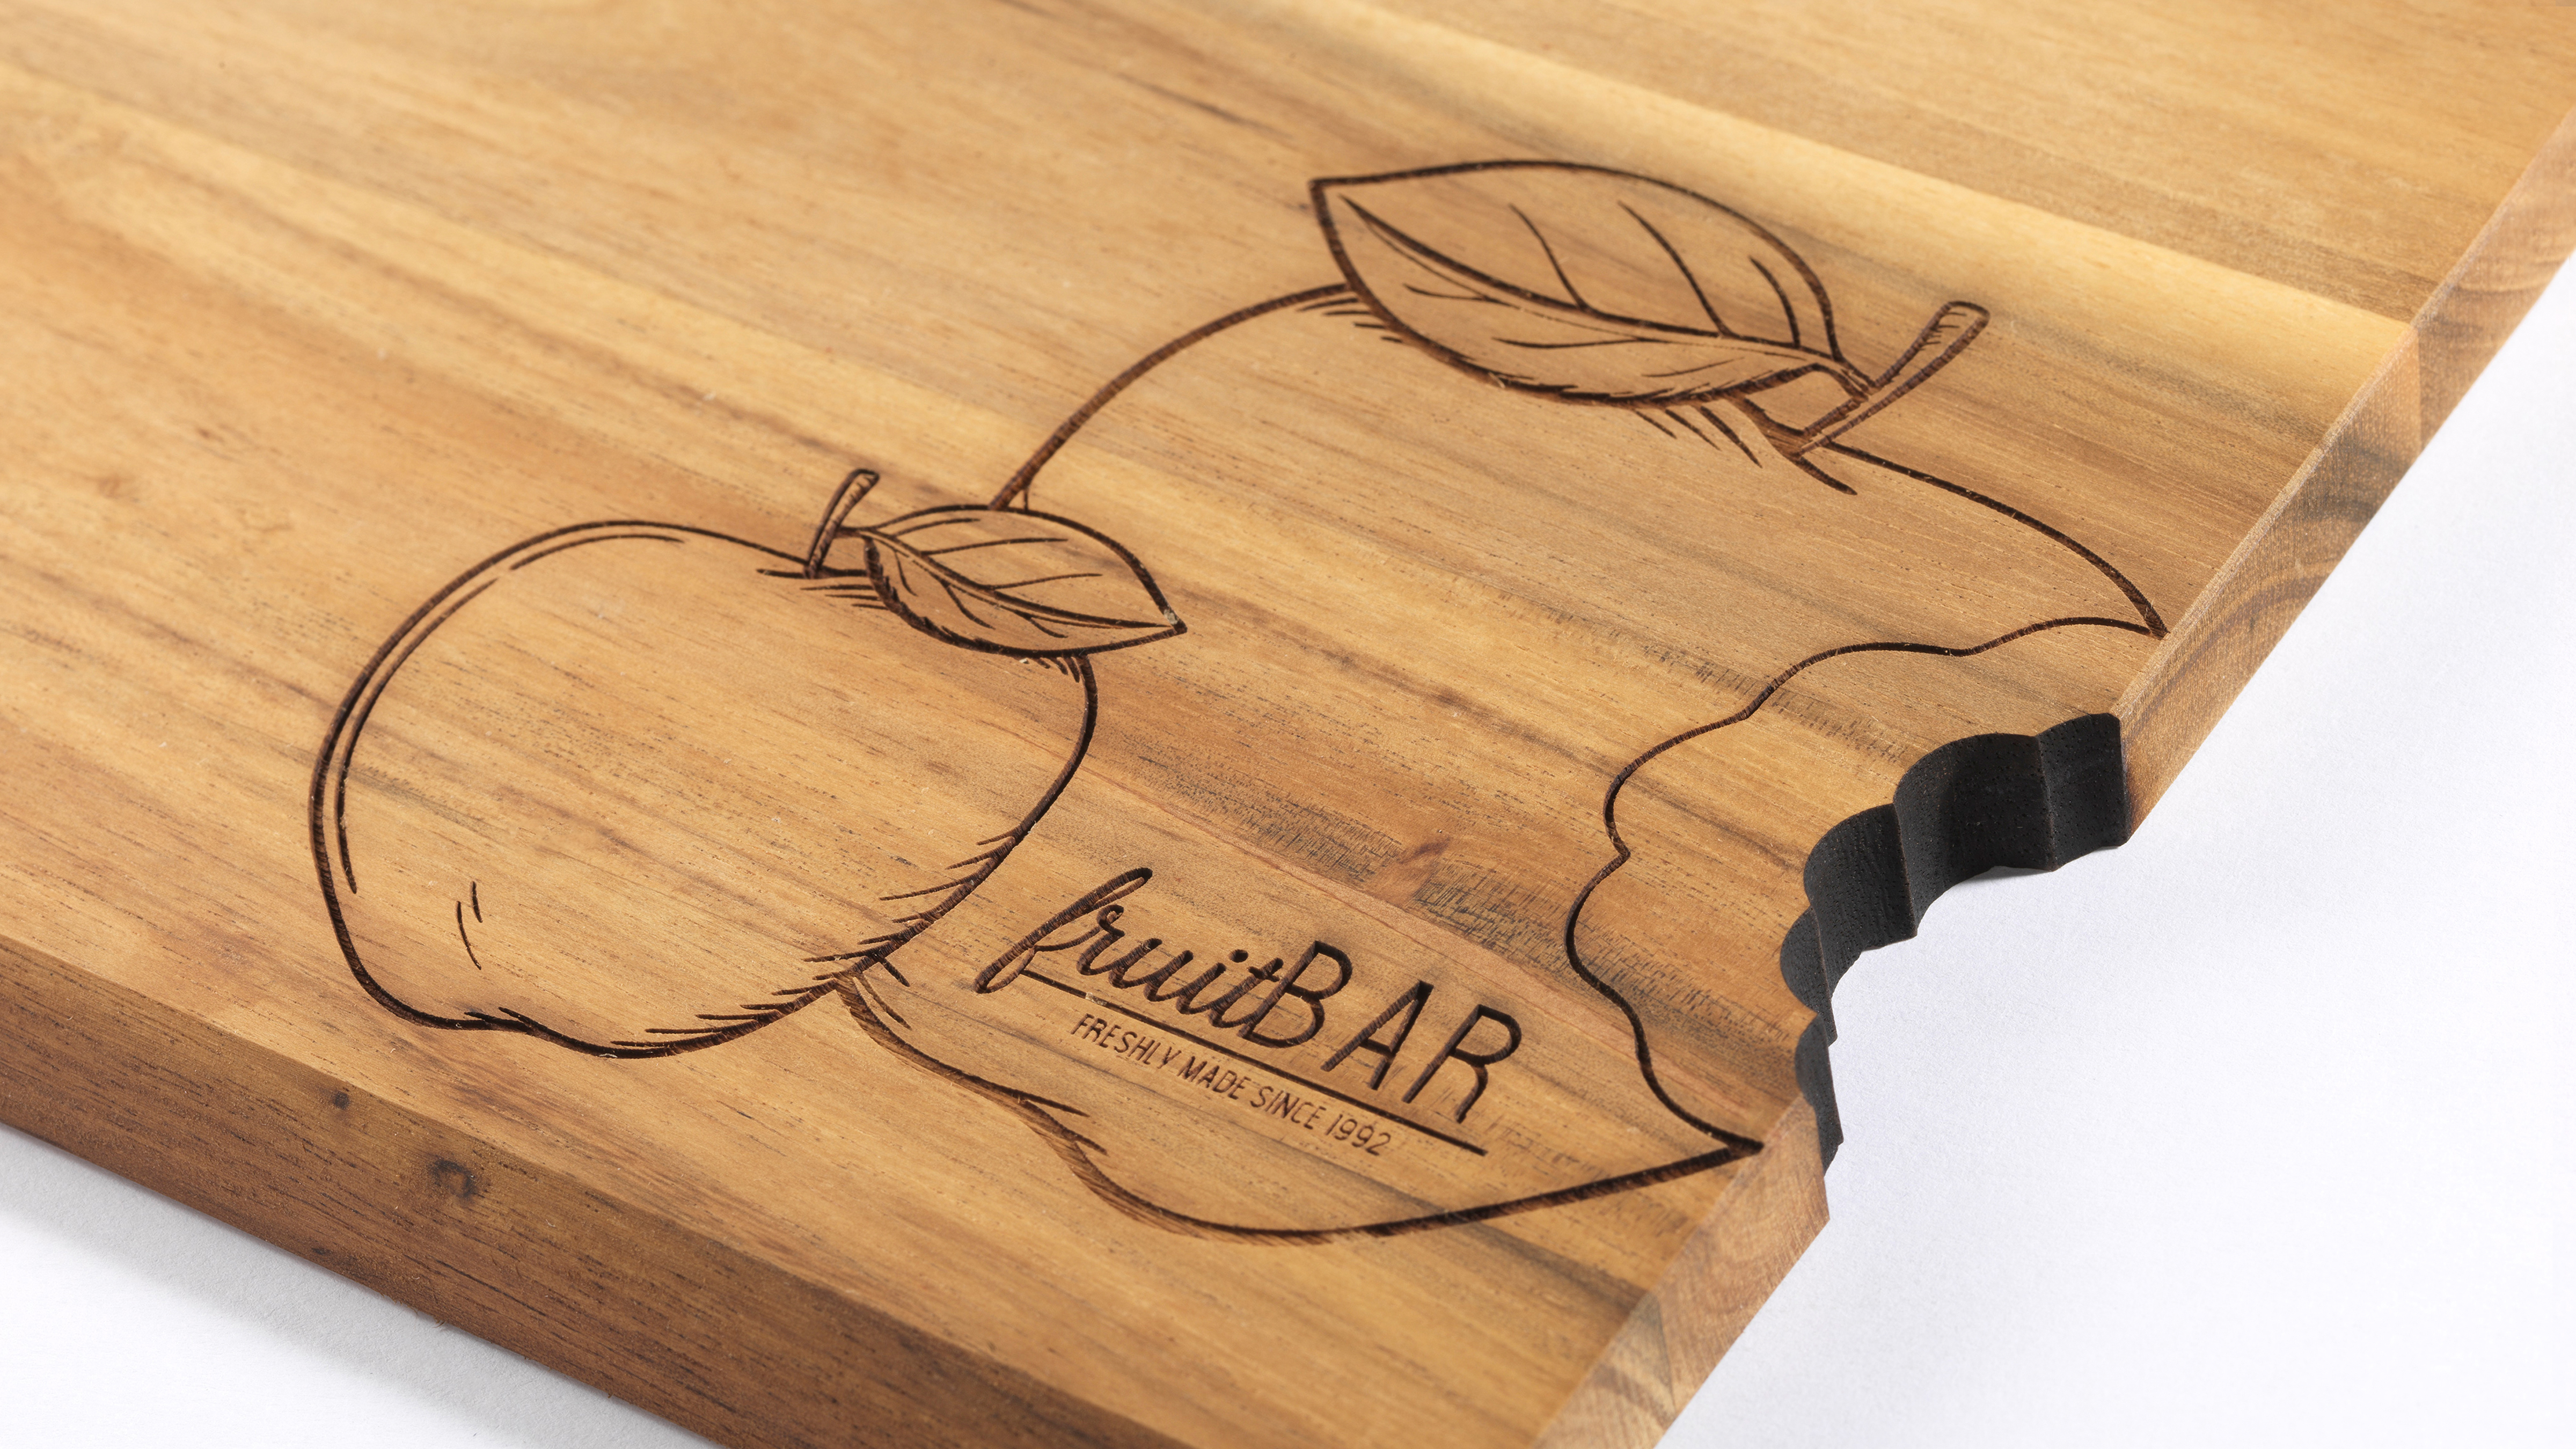 Grabados láser en madera; un producto personalizable - BLOG - Fito&Rebe